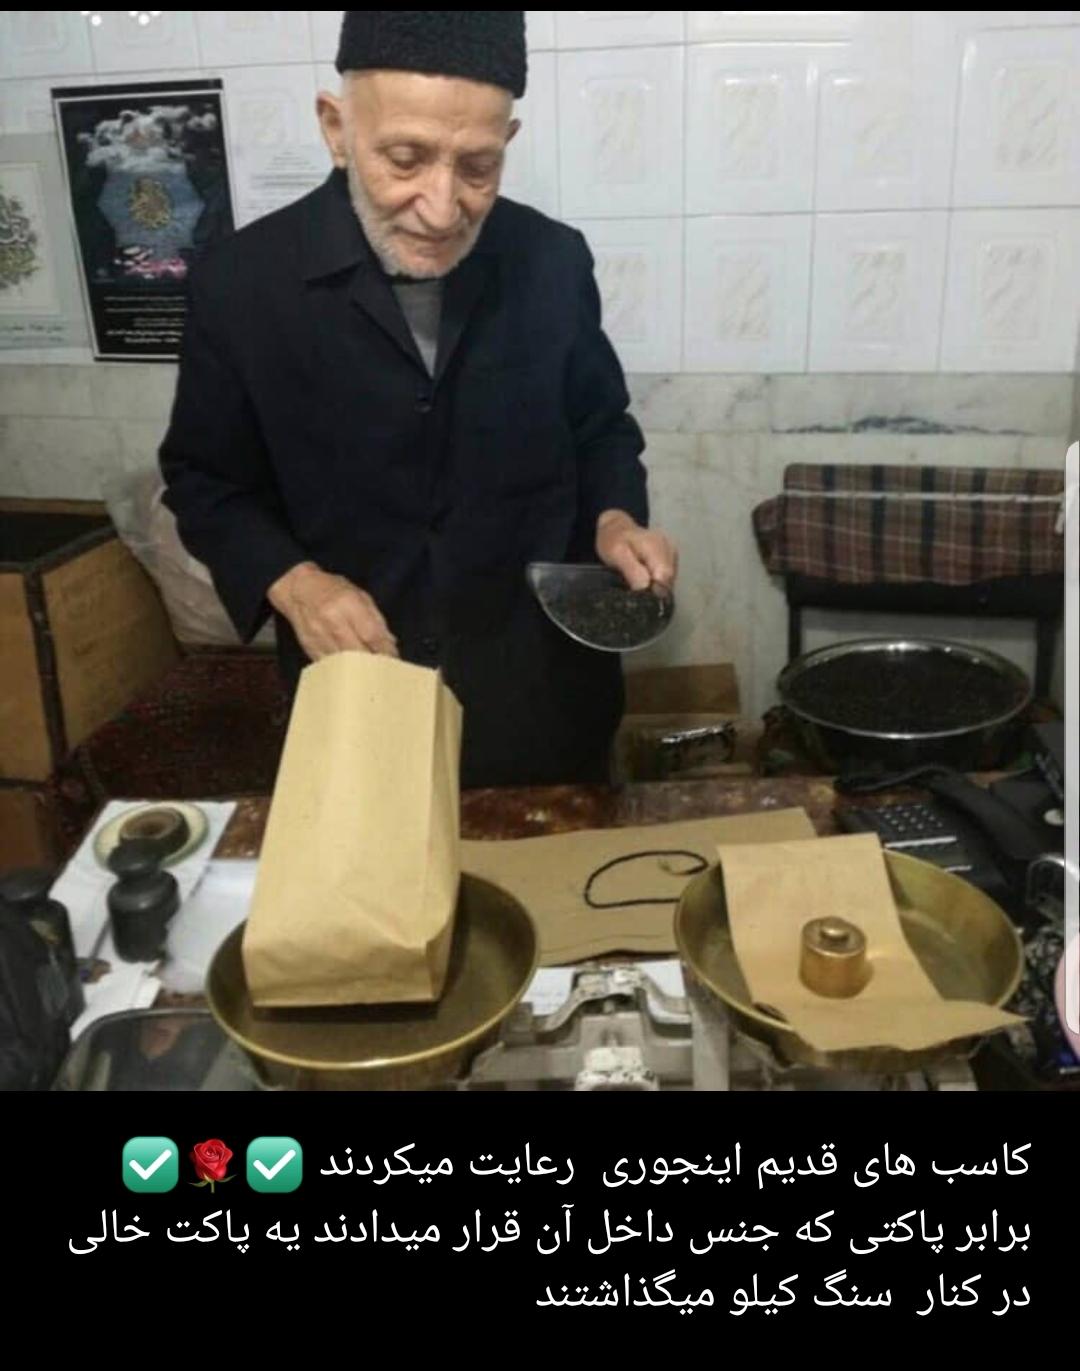 چای فروش با انصاف  تبریزی ک وزن پاکت را با یک پاکت خالی در کنار وزنه جبران میکند سوران1348